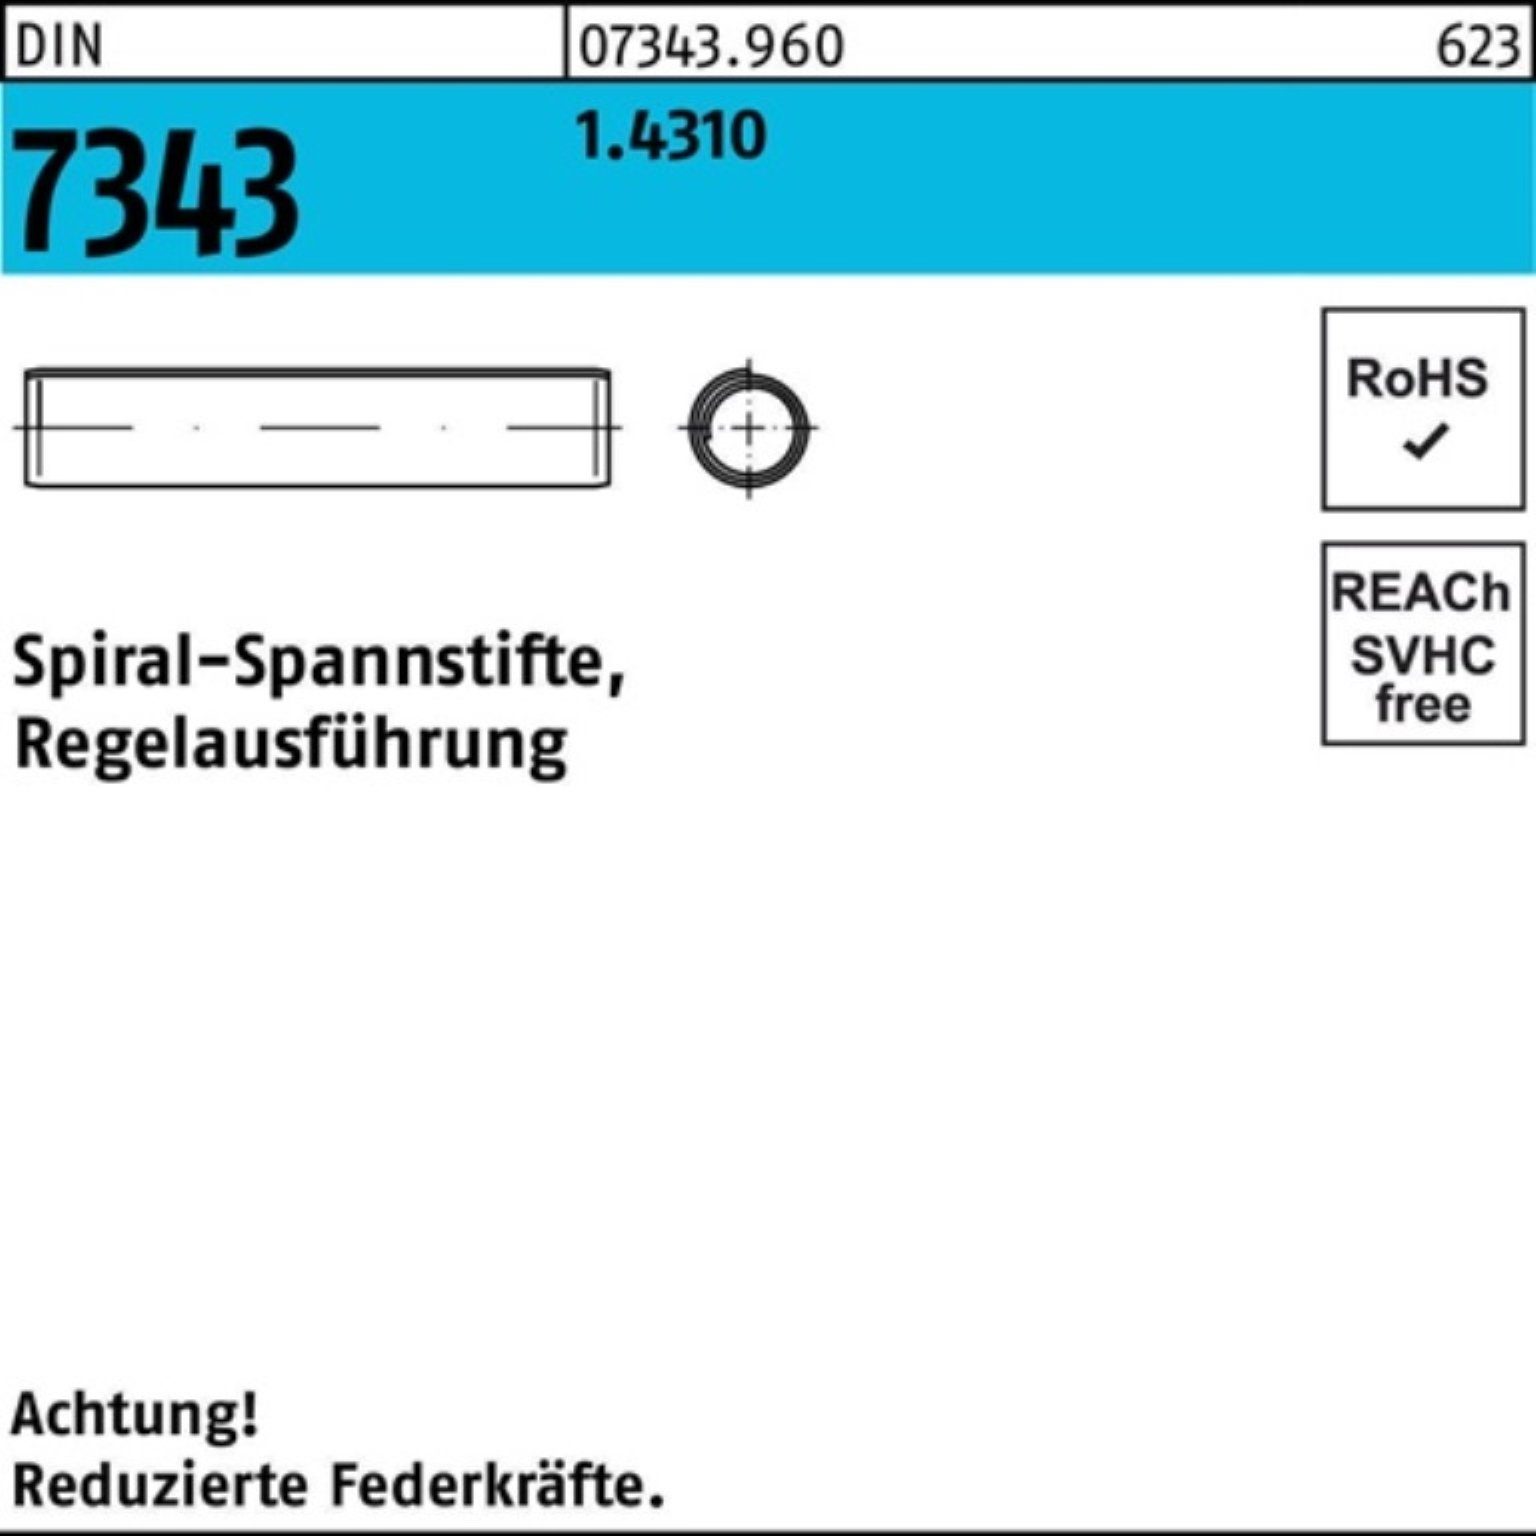 7343/ISO Reyher 500er 8750 Regelausf. 45 Pack Spiralspannstift Spannstift 4x 1.4310 DIN